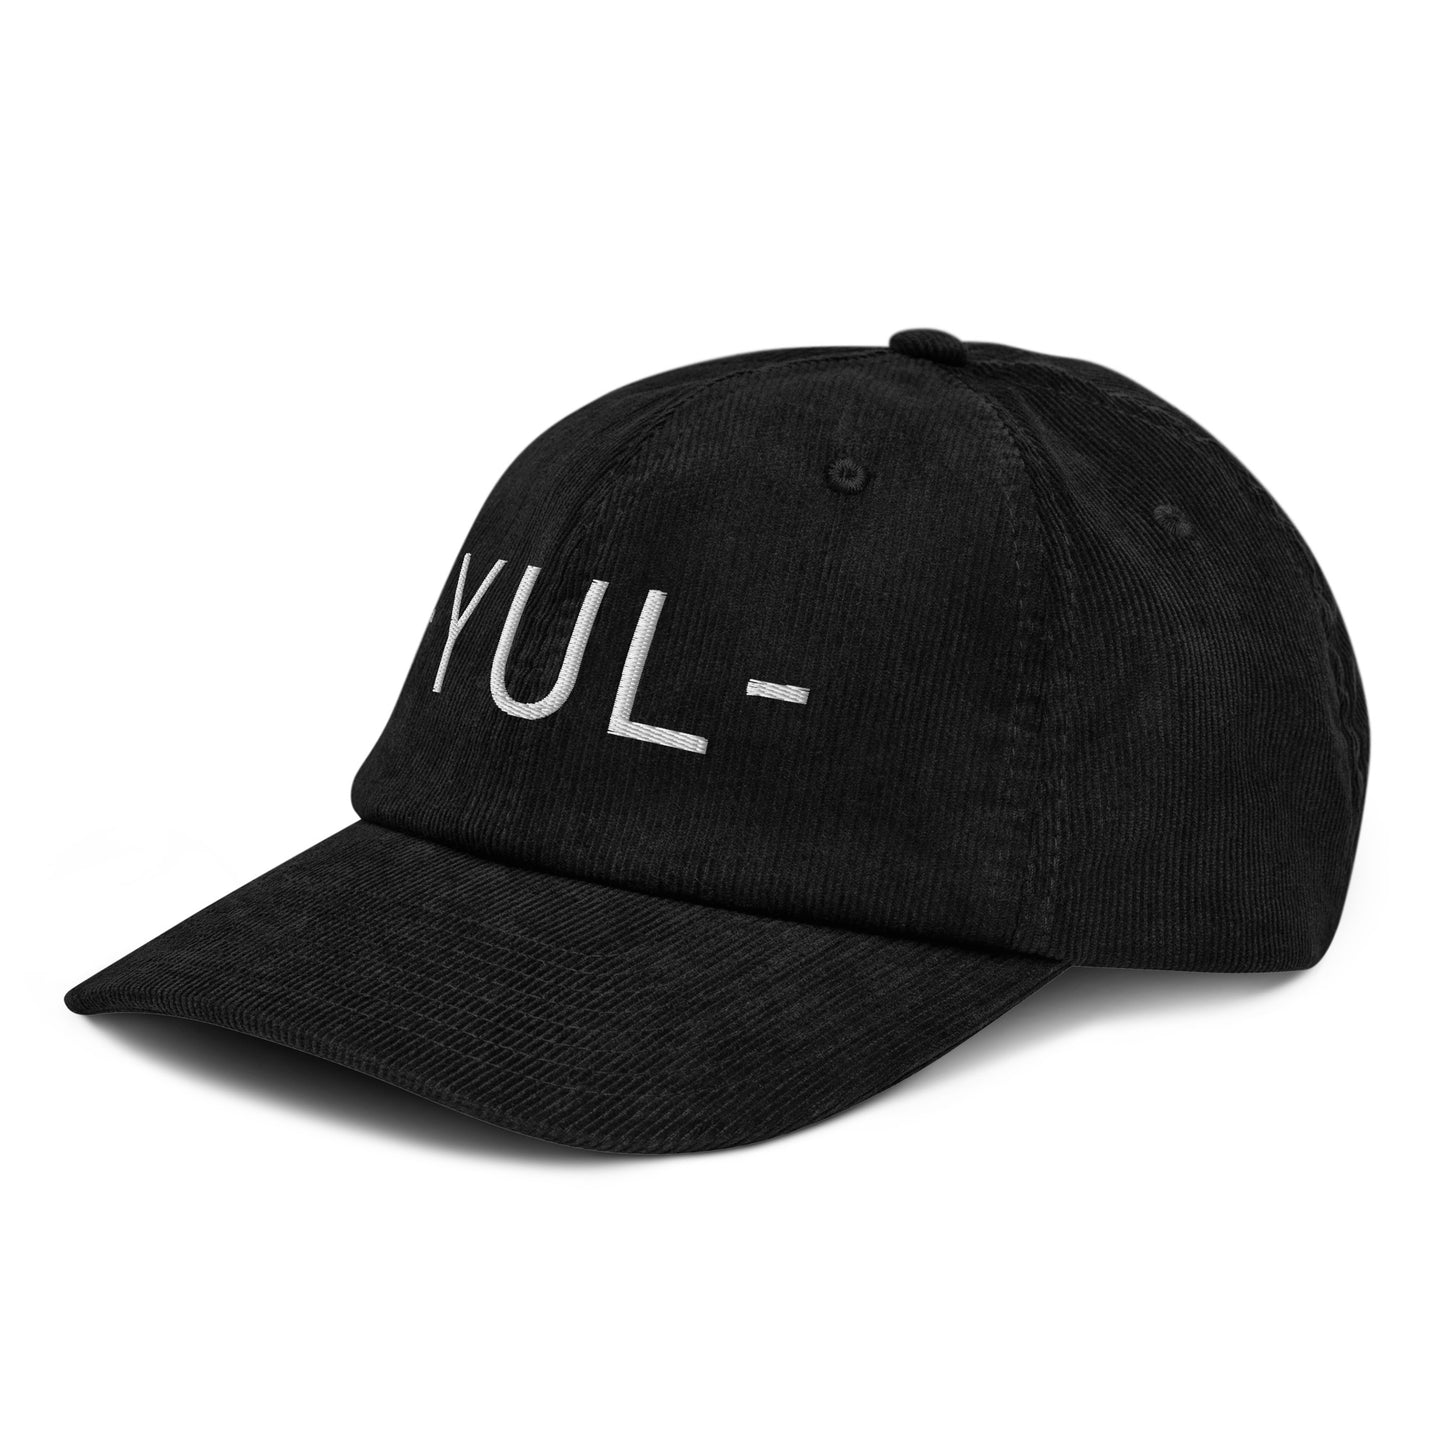 Souvenir Corduroy Hat - White • YUL Montreal • YHM Designs - Image 14